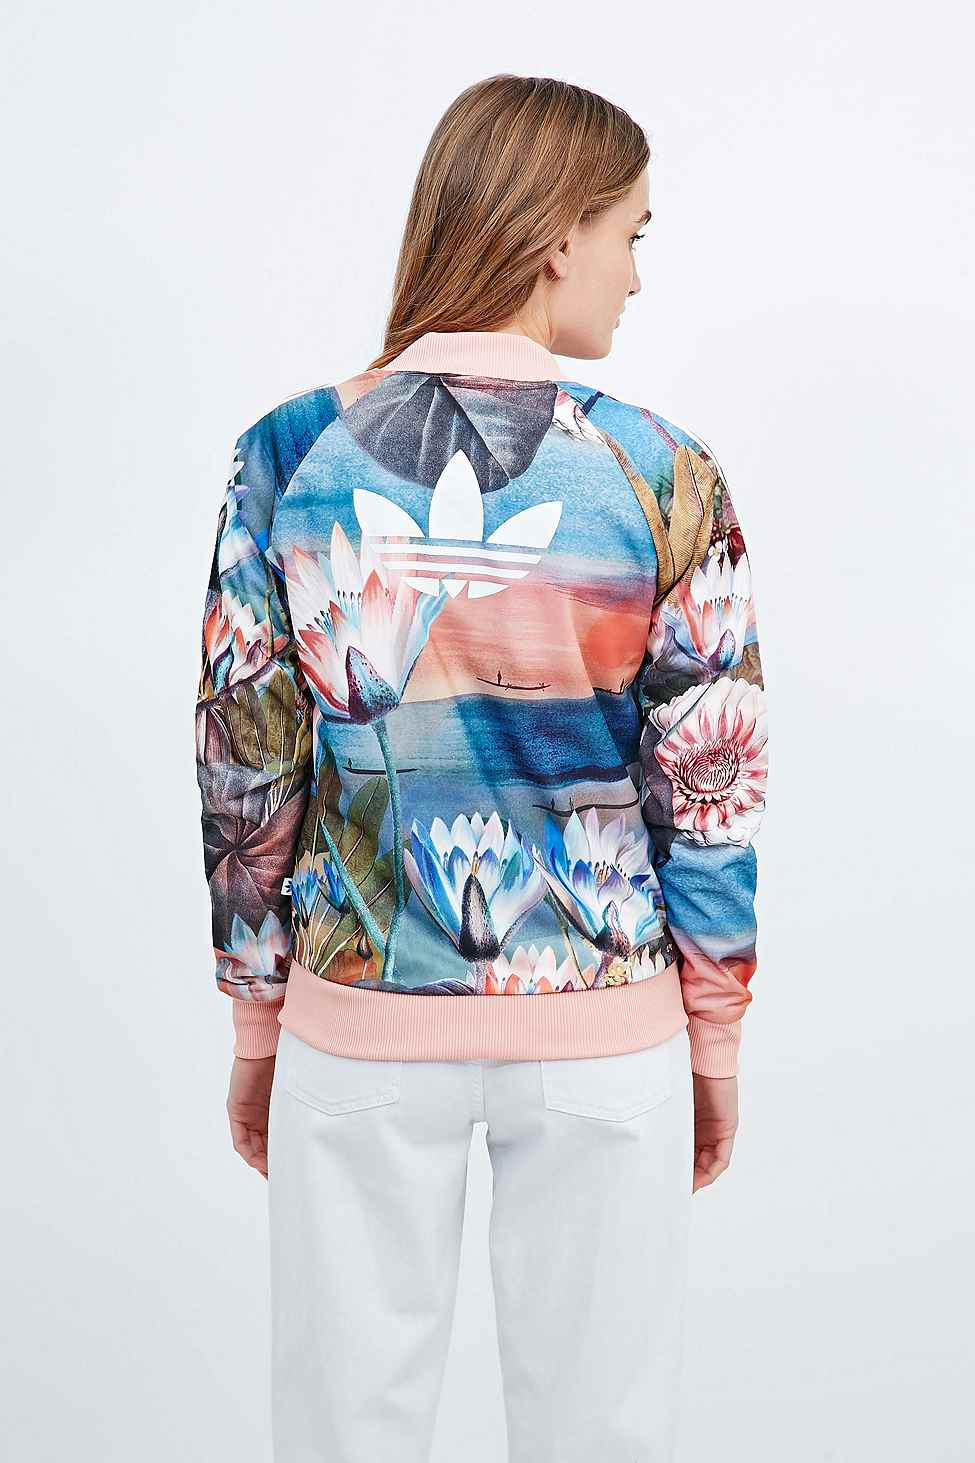 Shopping \u003e adidas patterned jacket, Up 